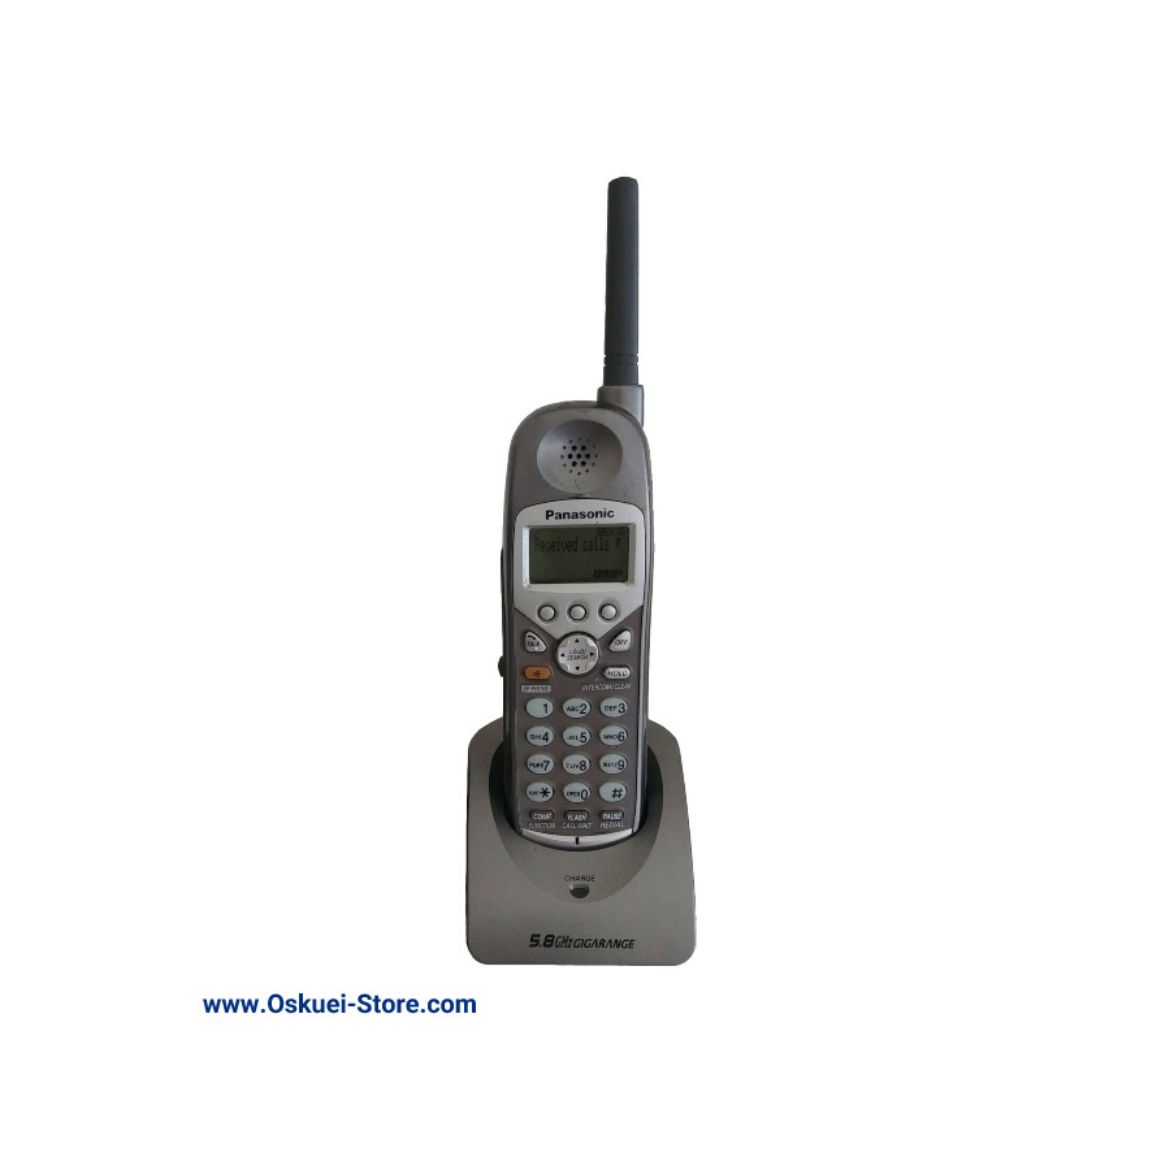 Panasonic KX-TGA931 Cordless Telephone